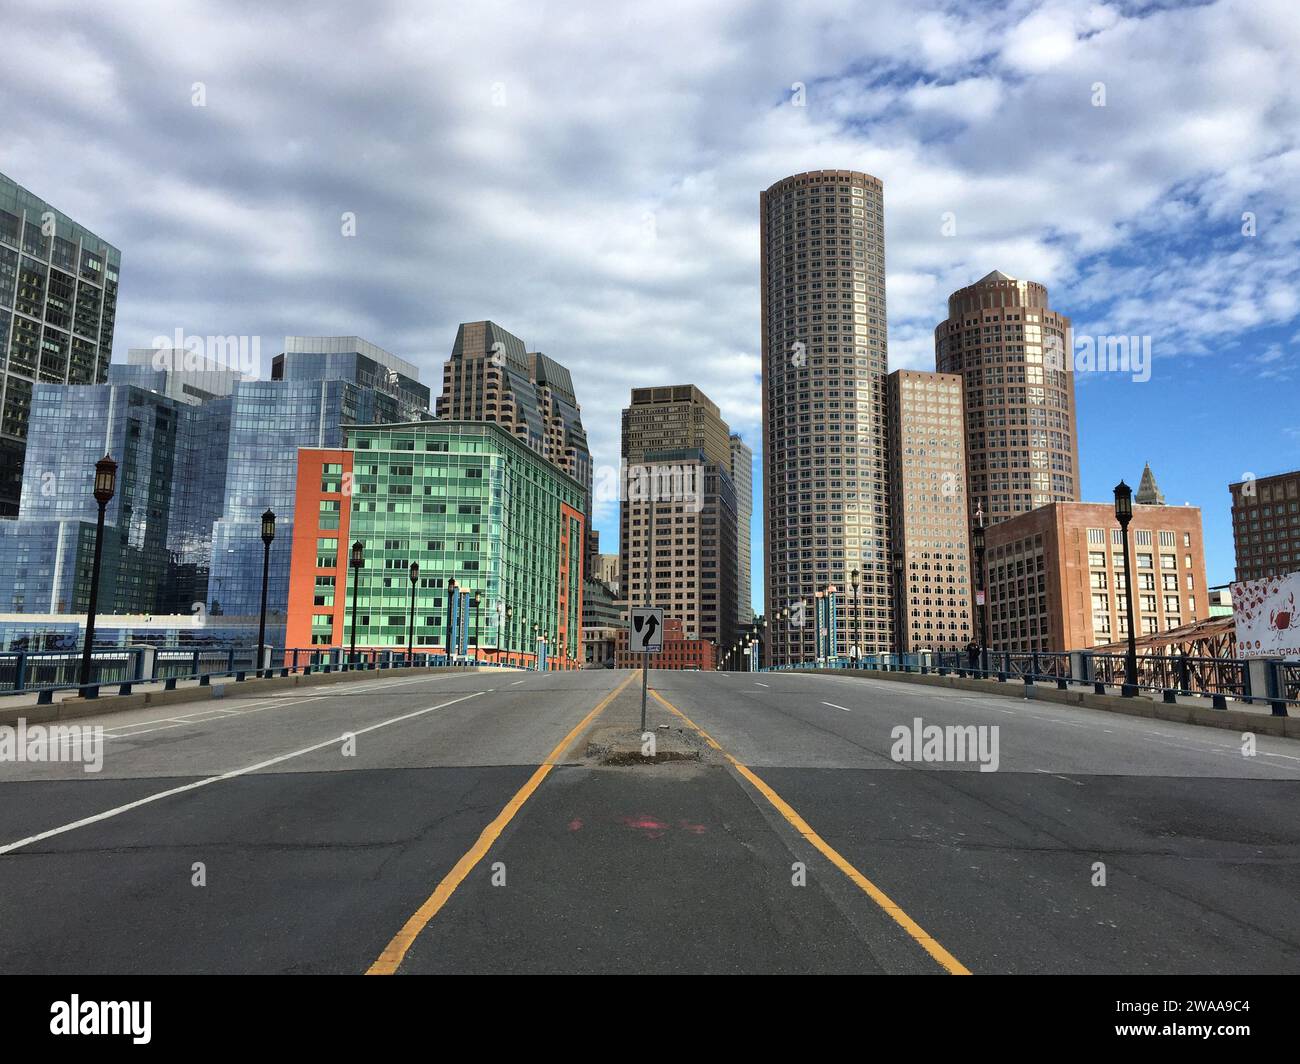 Die ruhigen Straßen Bostons stehen im Kontrast zur dynamischen Skyline und betonen die architektonische Vielfalt und den urbanen Charme der Stadt. Stockfoto